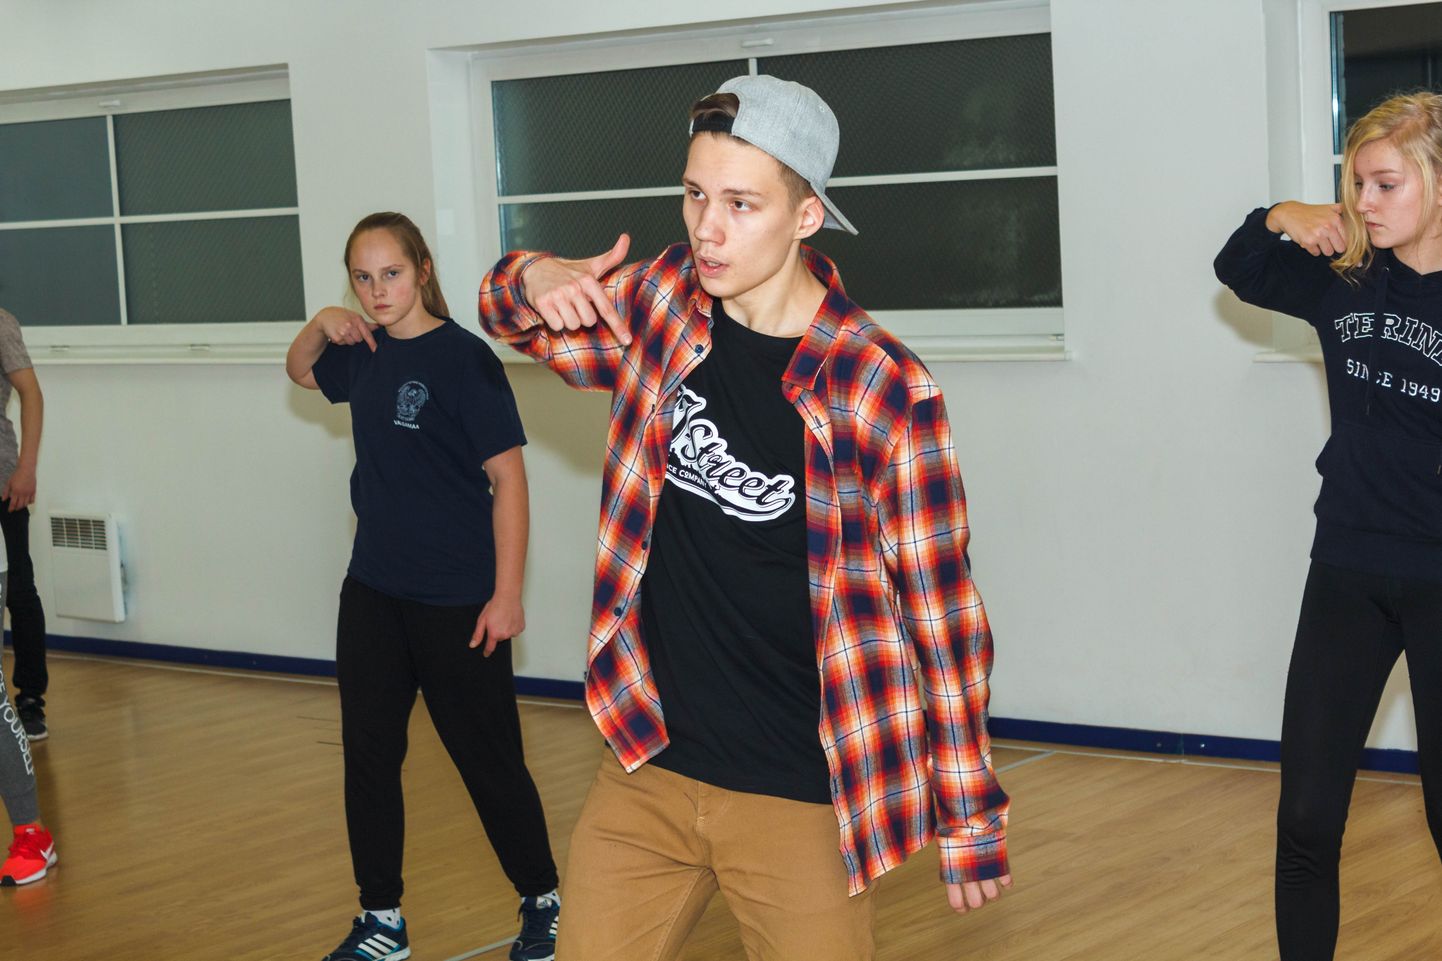 Tartu noormees, JJ-Street tantsukooli tantsija Markus Tõnissaar on pälvinud tunnustuse ka rahvusvahelistel võistlustel. Noormees jagab oma tantsukogemusi sellest sügisest ka Valga noorte tantsuhuvilistega.